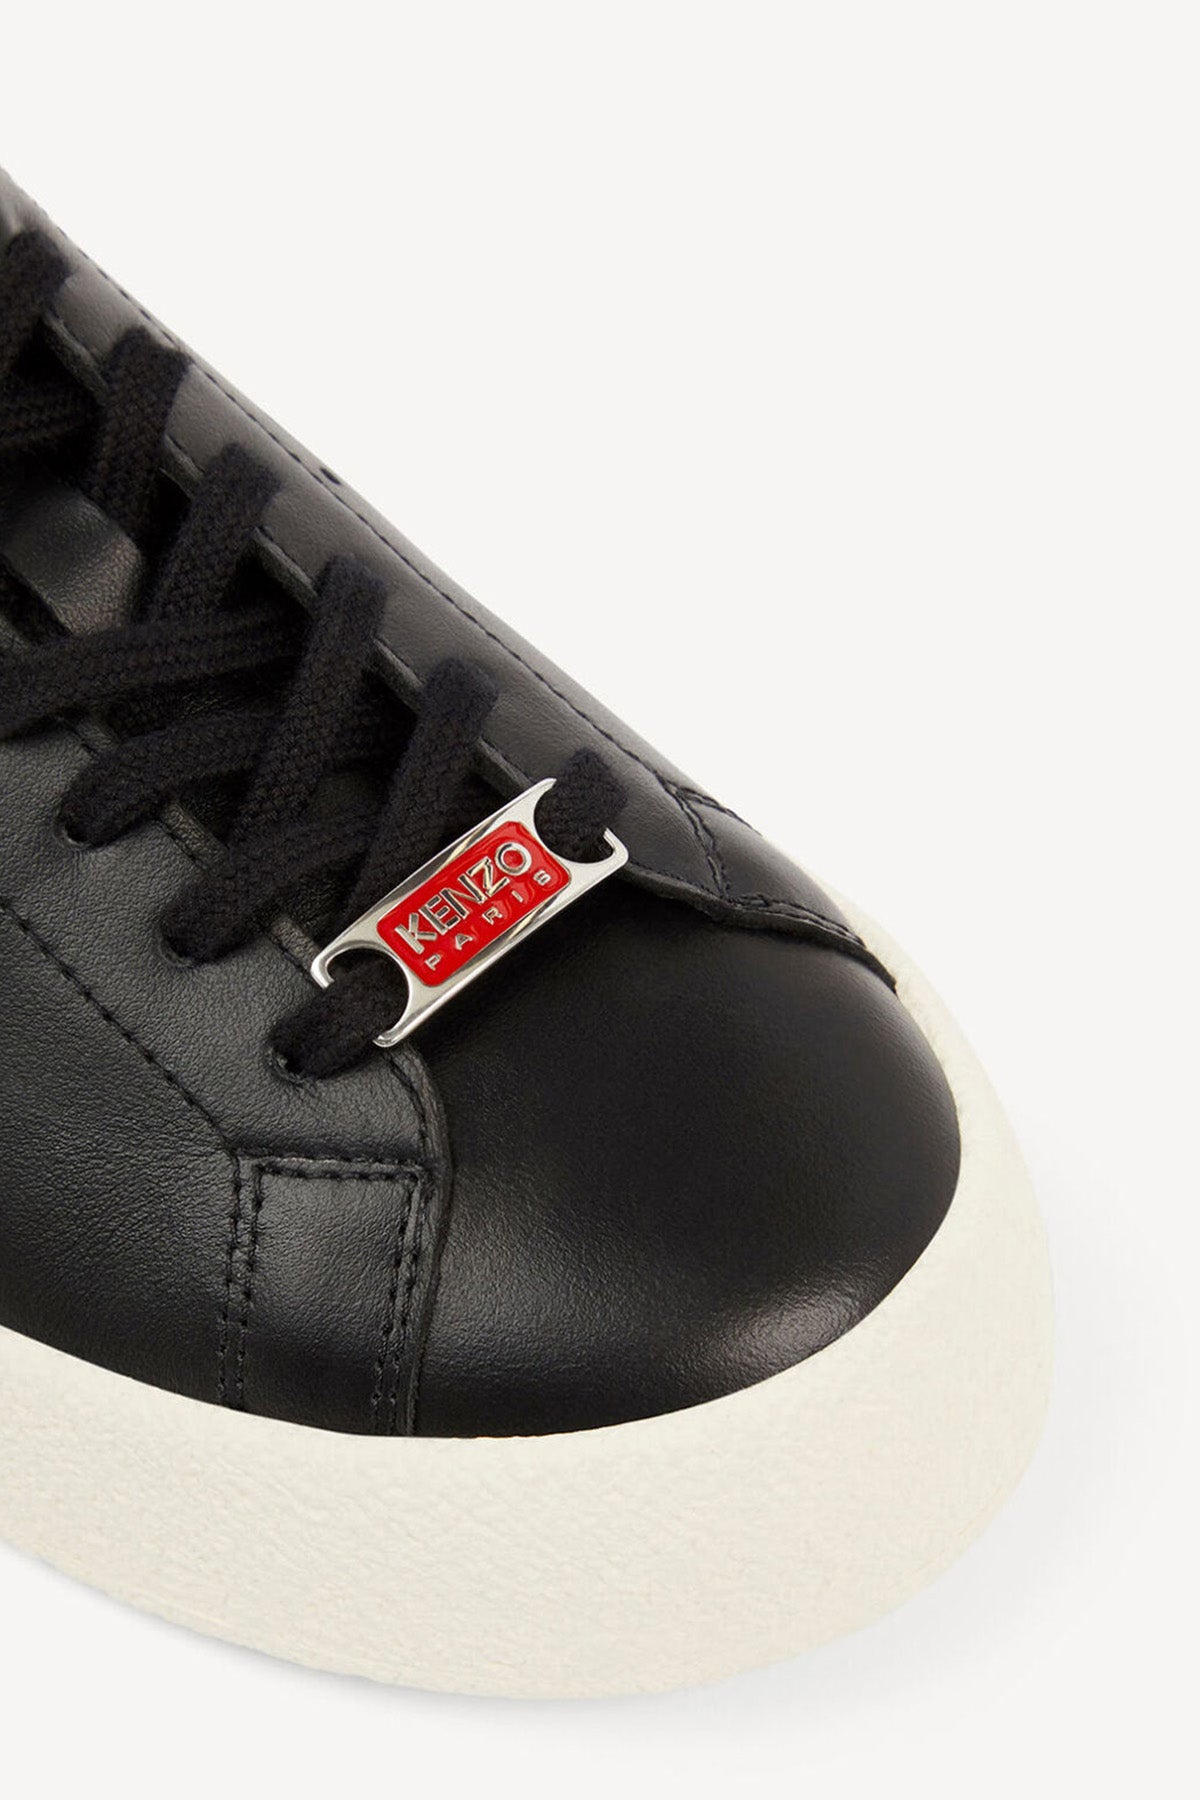 Kenzo Deri Sneaker Ayakkabı-Libas Trendy Fashion Store